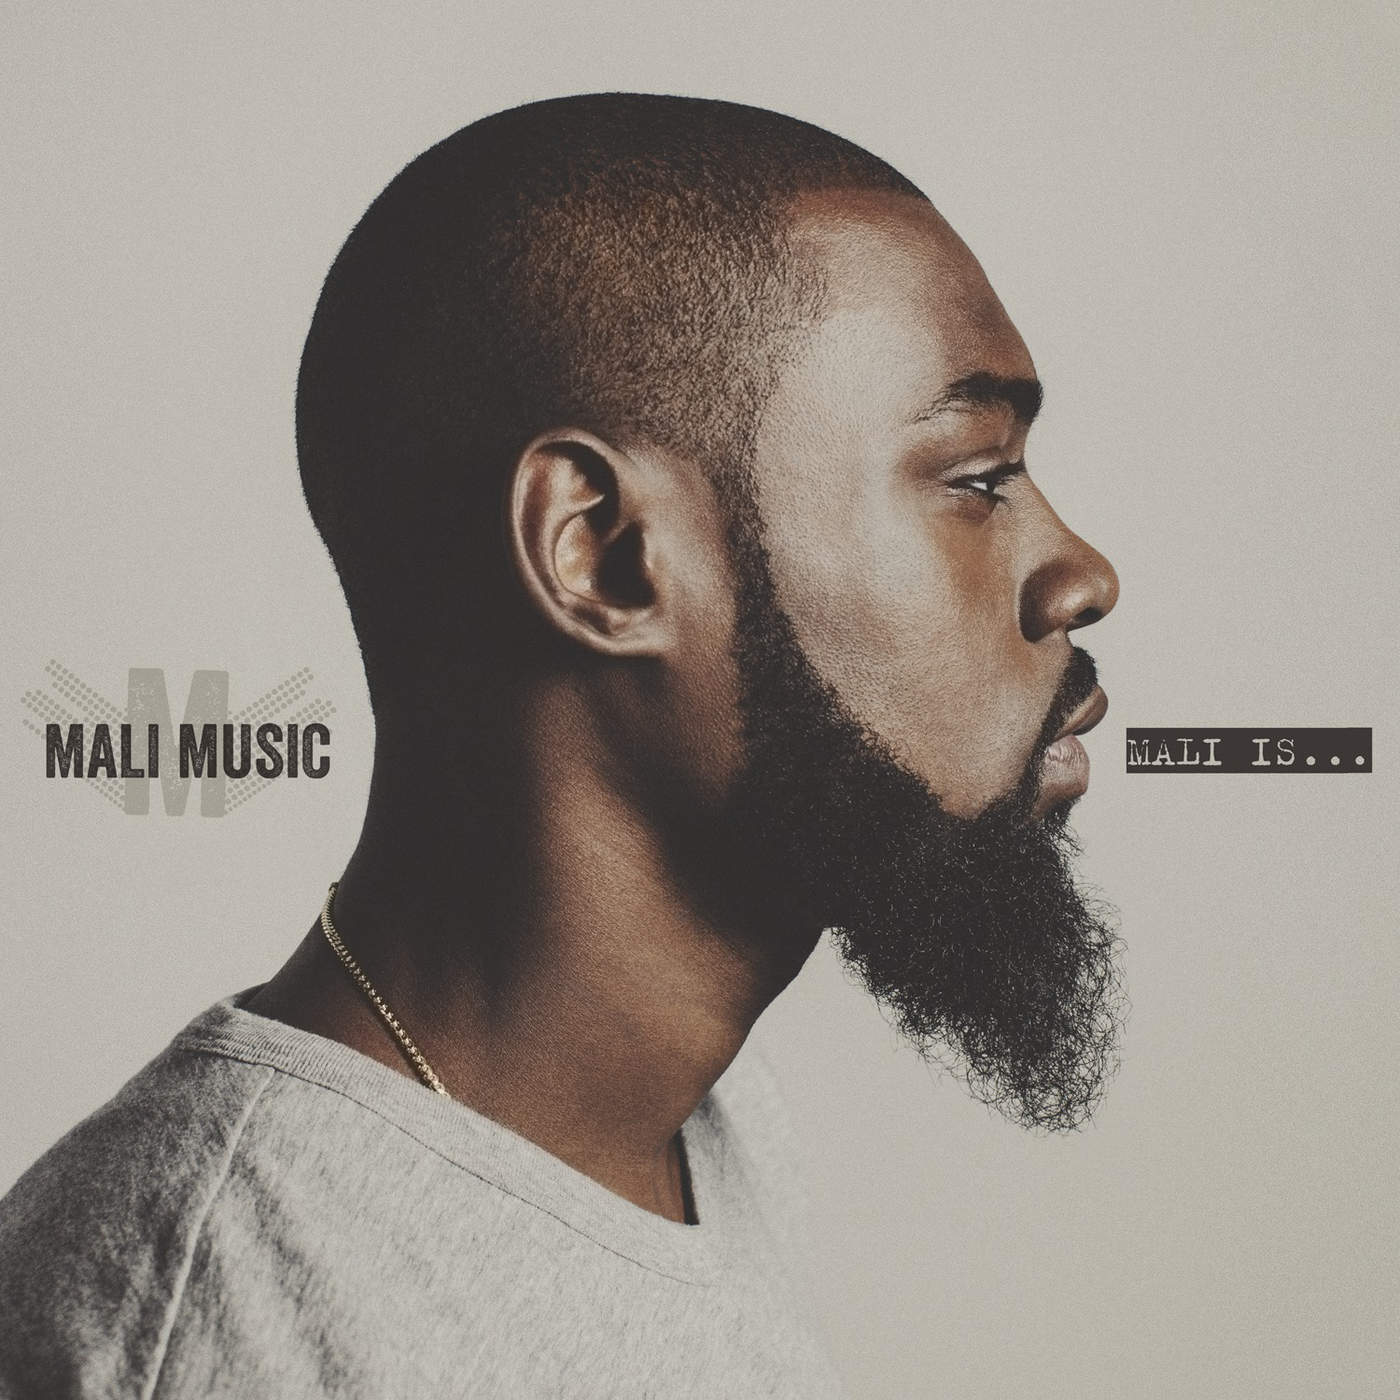 Art for Beautiful by Mali Music